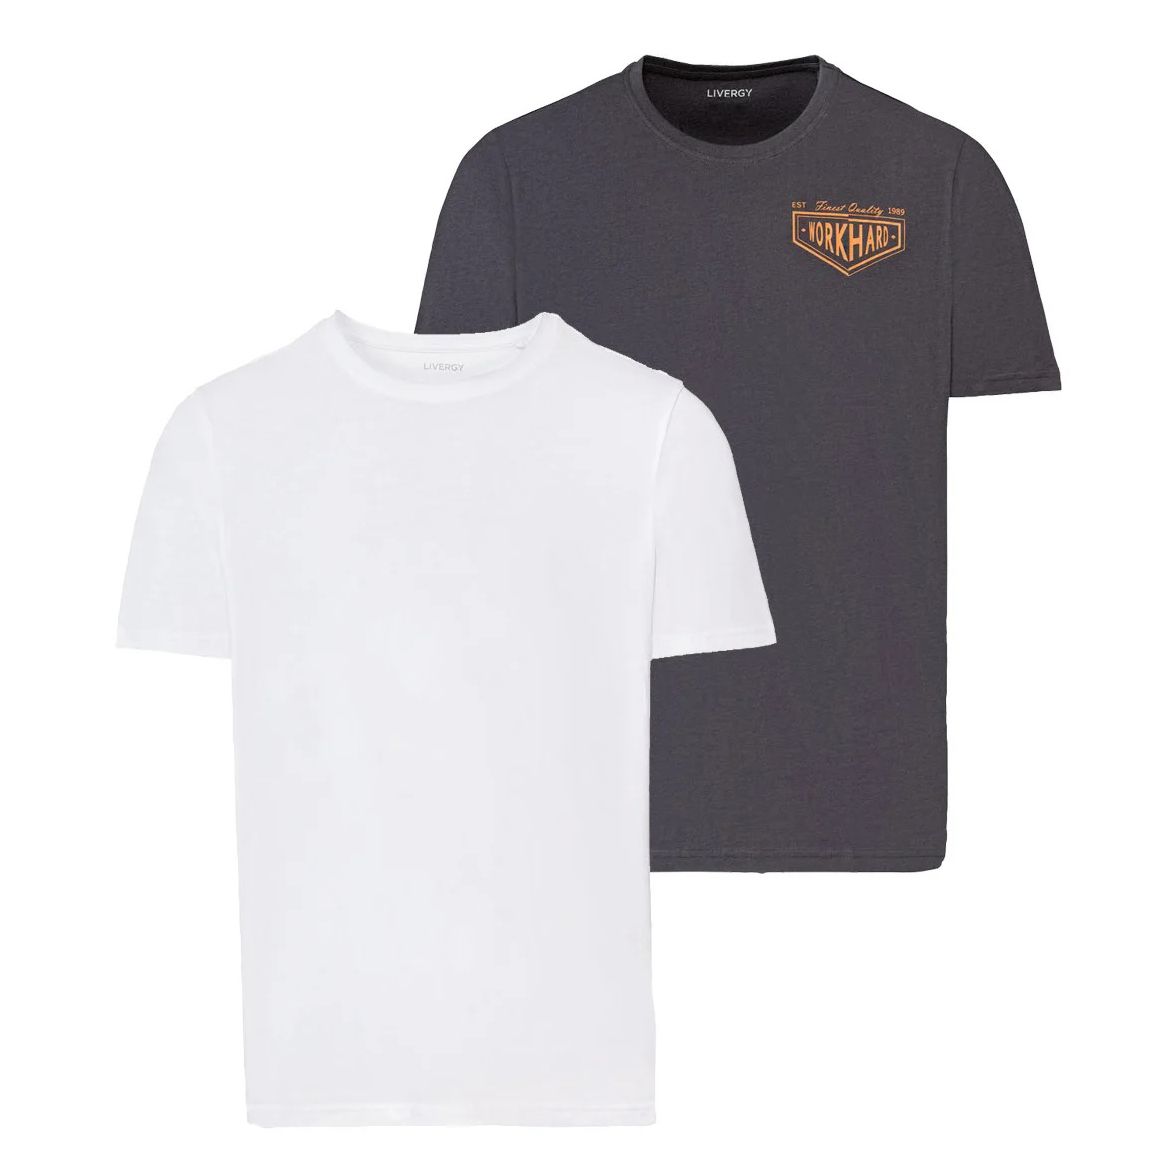 تی شرت آستین کوتاه مردانه لیورجی مدل 8464159 مجموعه 2 عددی